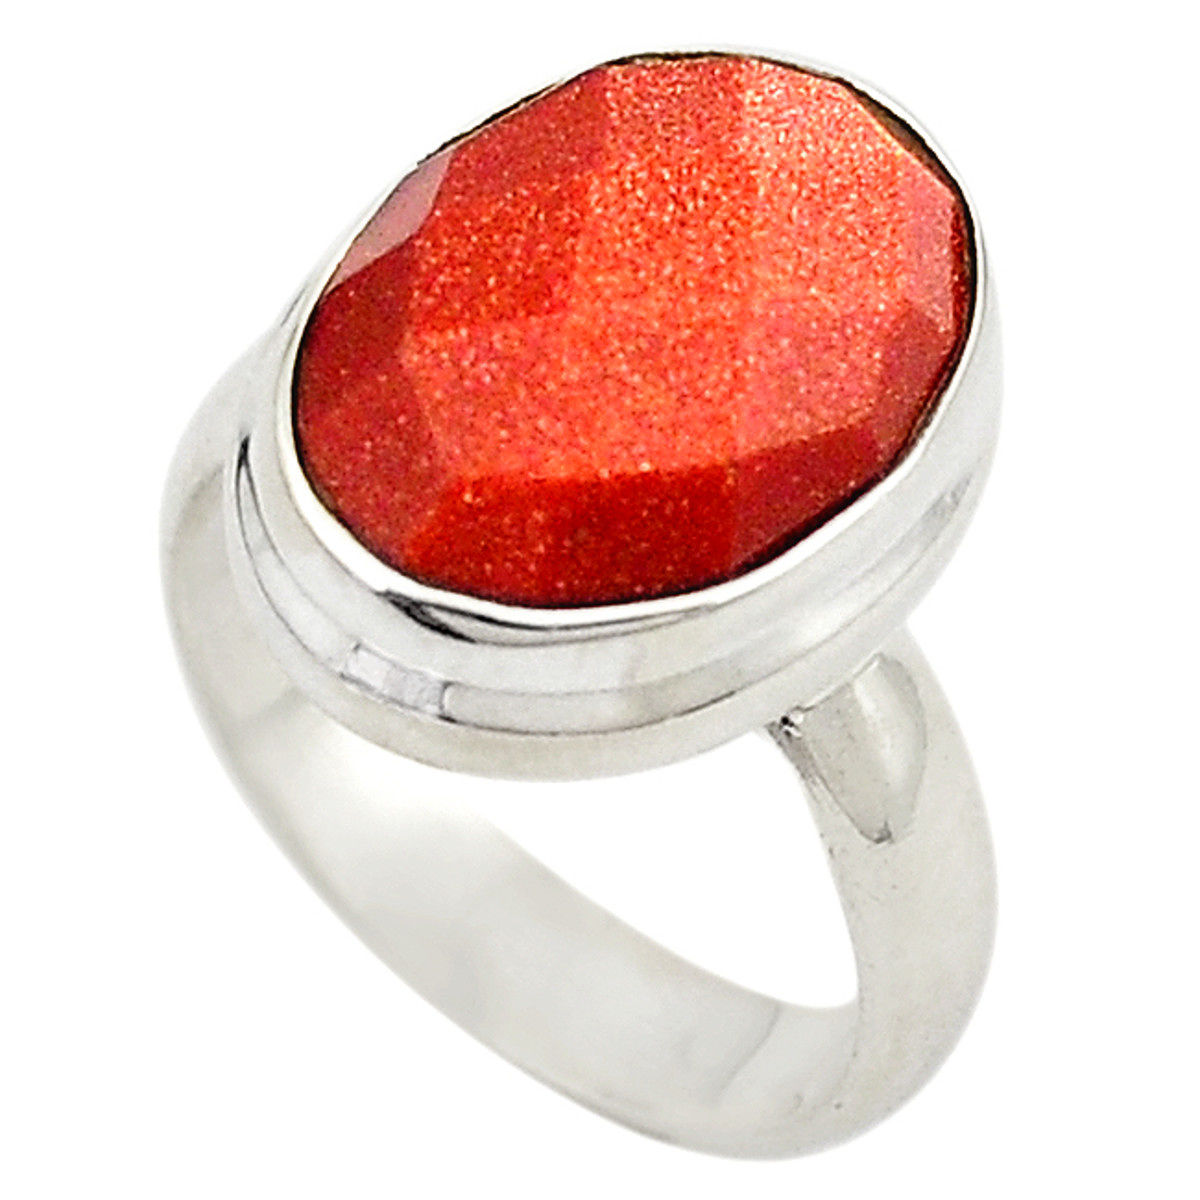 Details about   Larimar Oval Shape Gemstone 925 Sterling Silver Rose Color Ring